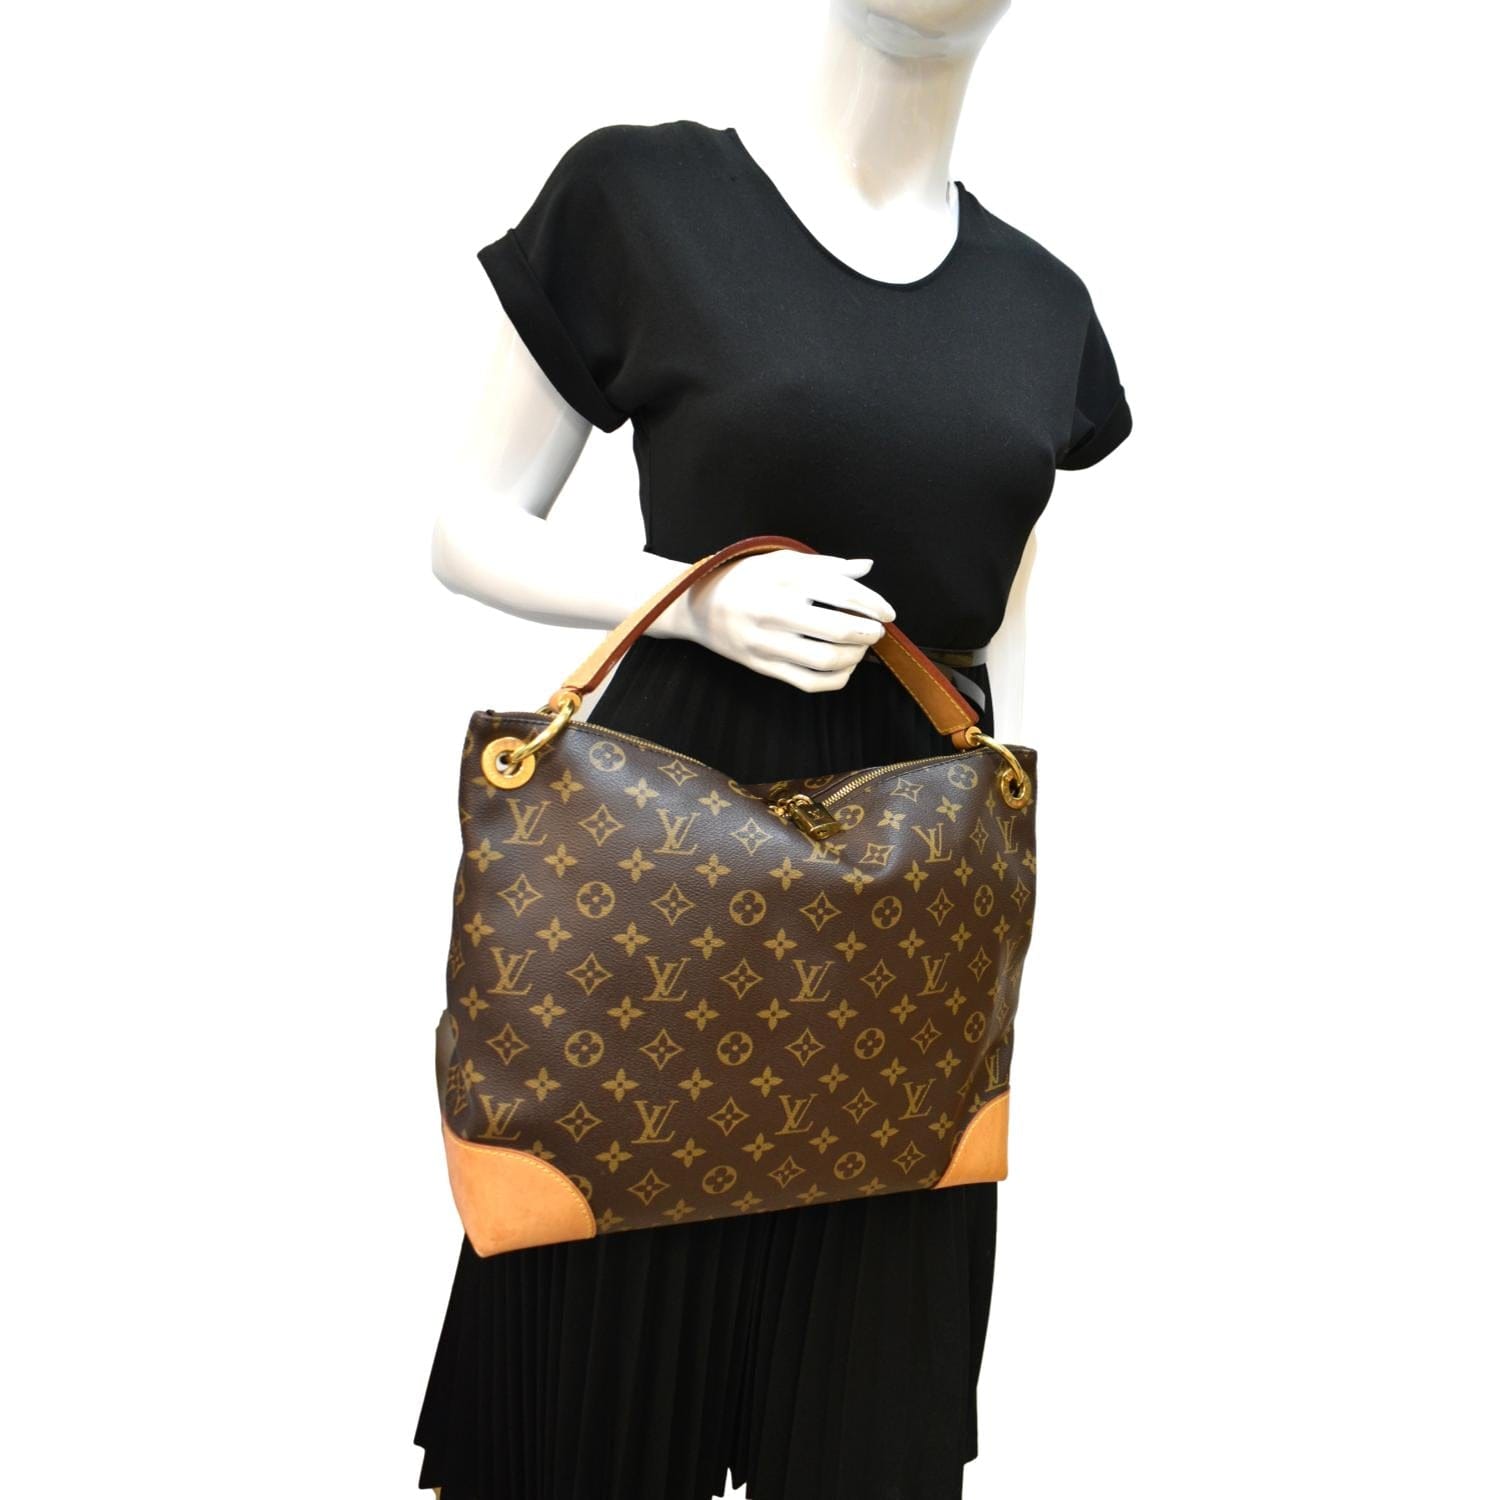 SHOULDER BAG, monogram canvas, Louis Vuitton Berri MM. Vintage